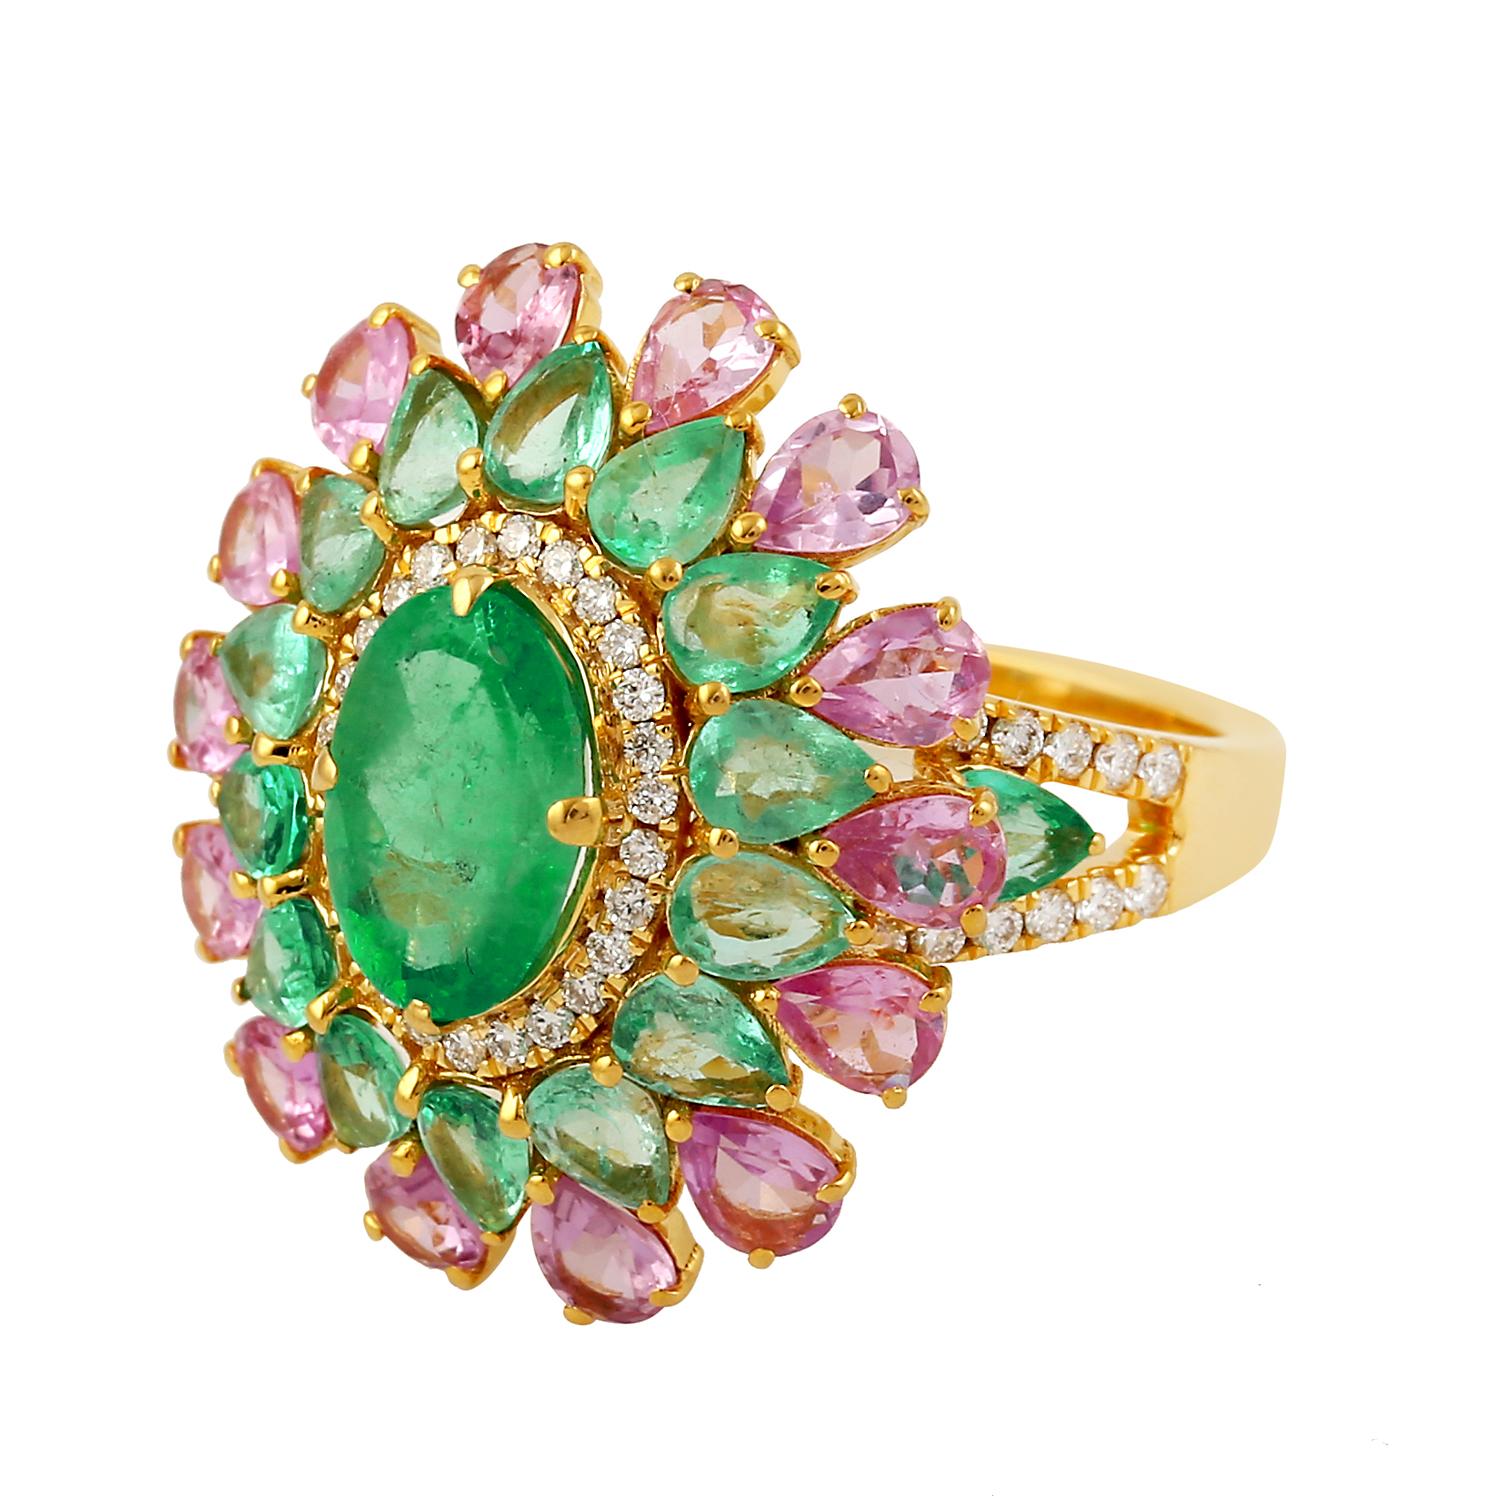 Dieser Ring wurde mit großer Sorgfalt aus 14-karätigem Gold gefertigt.  Er ist von Hand mit 3,56 Karat Smaragd, 2,14 Karat rosa Saphir und 0,36 Karat funkelnden Diamanten besetzt. 

Der Ring hat die Größe 7 und kann auf Anfrage größer oder kleiner